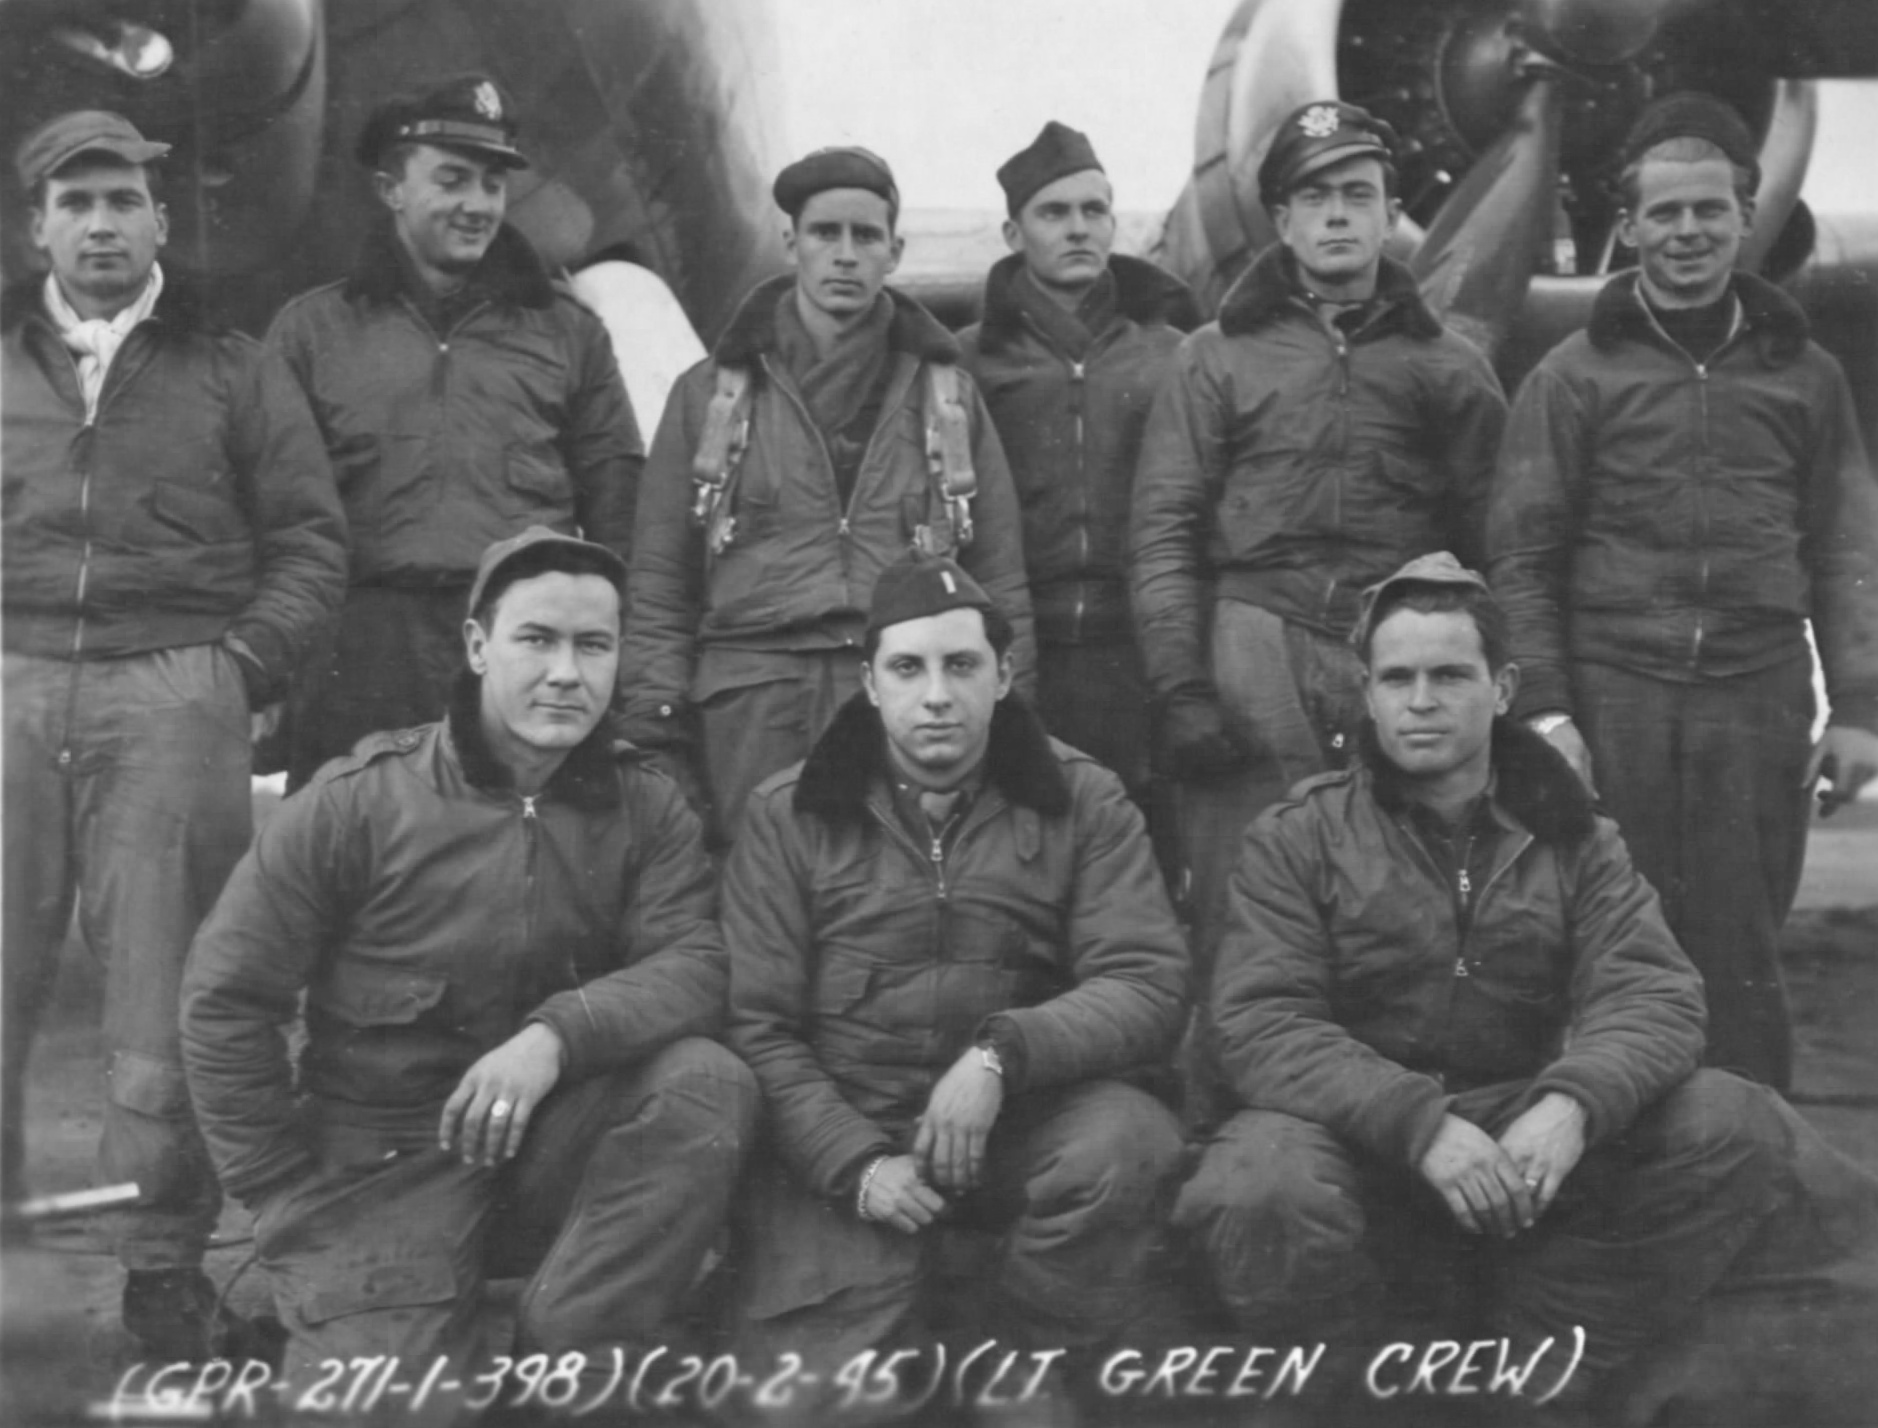 Green's Crew Photo